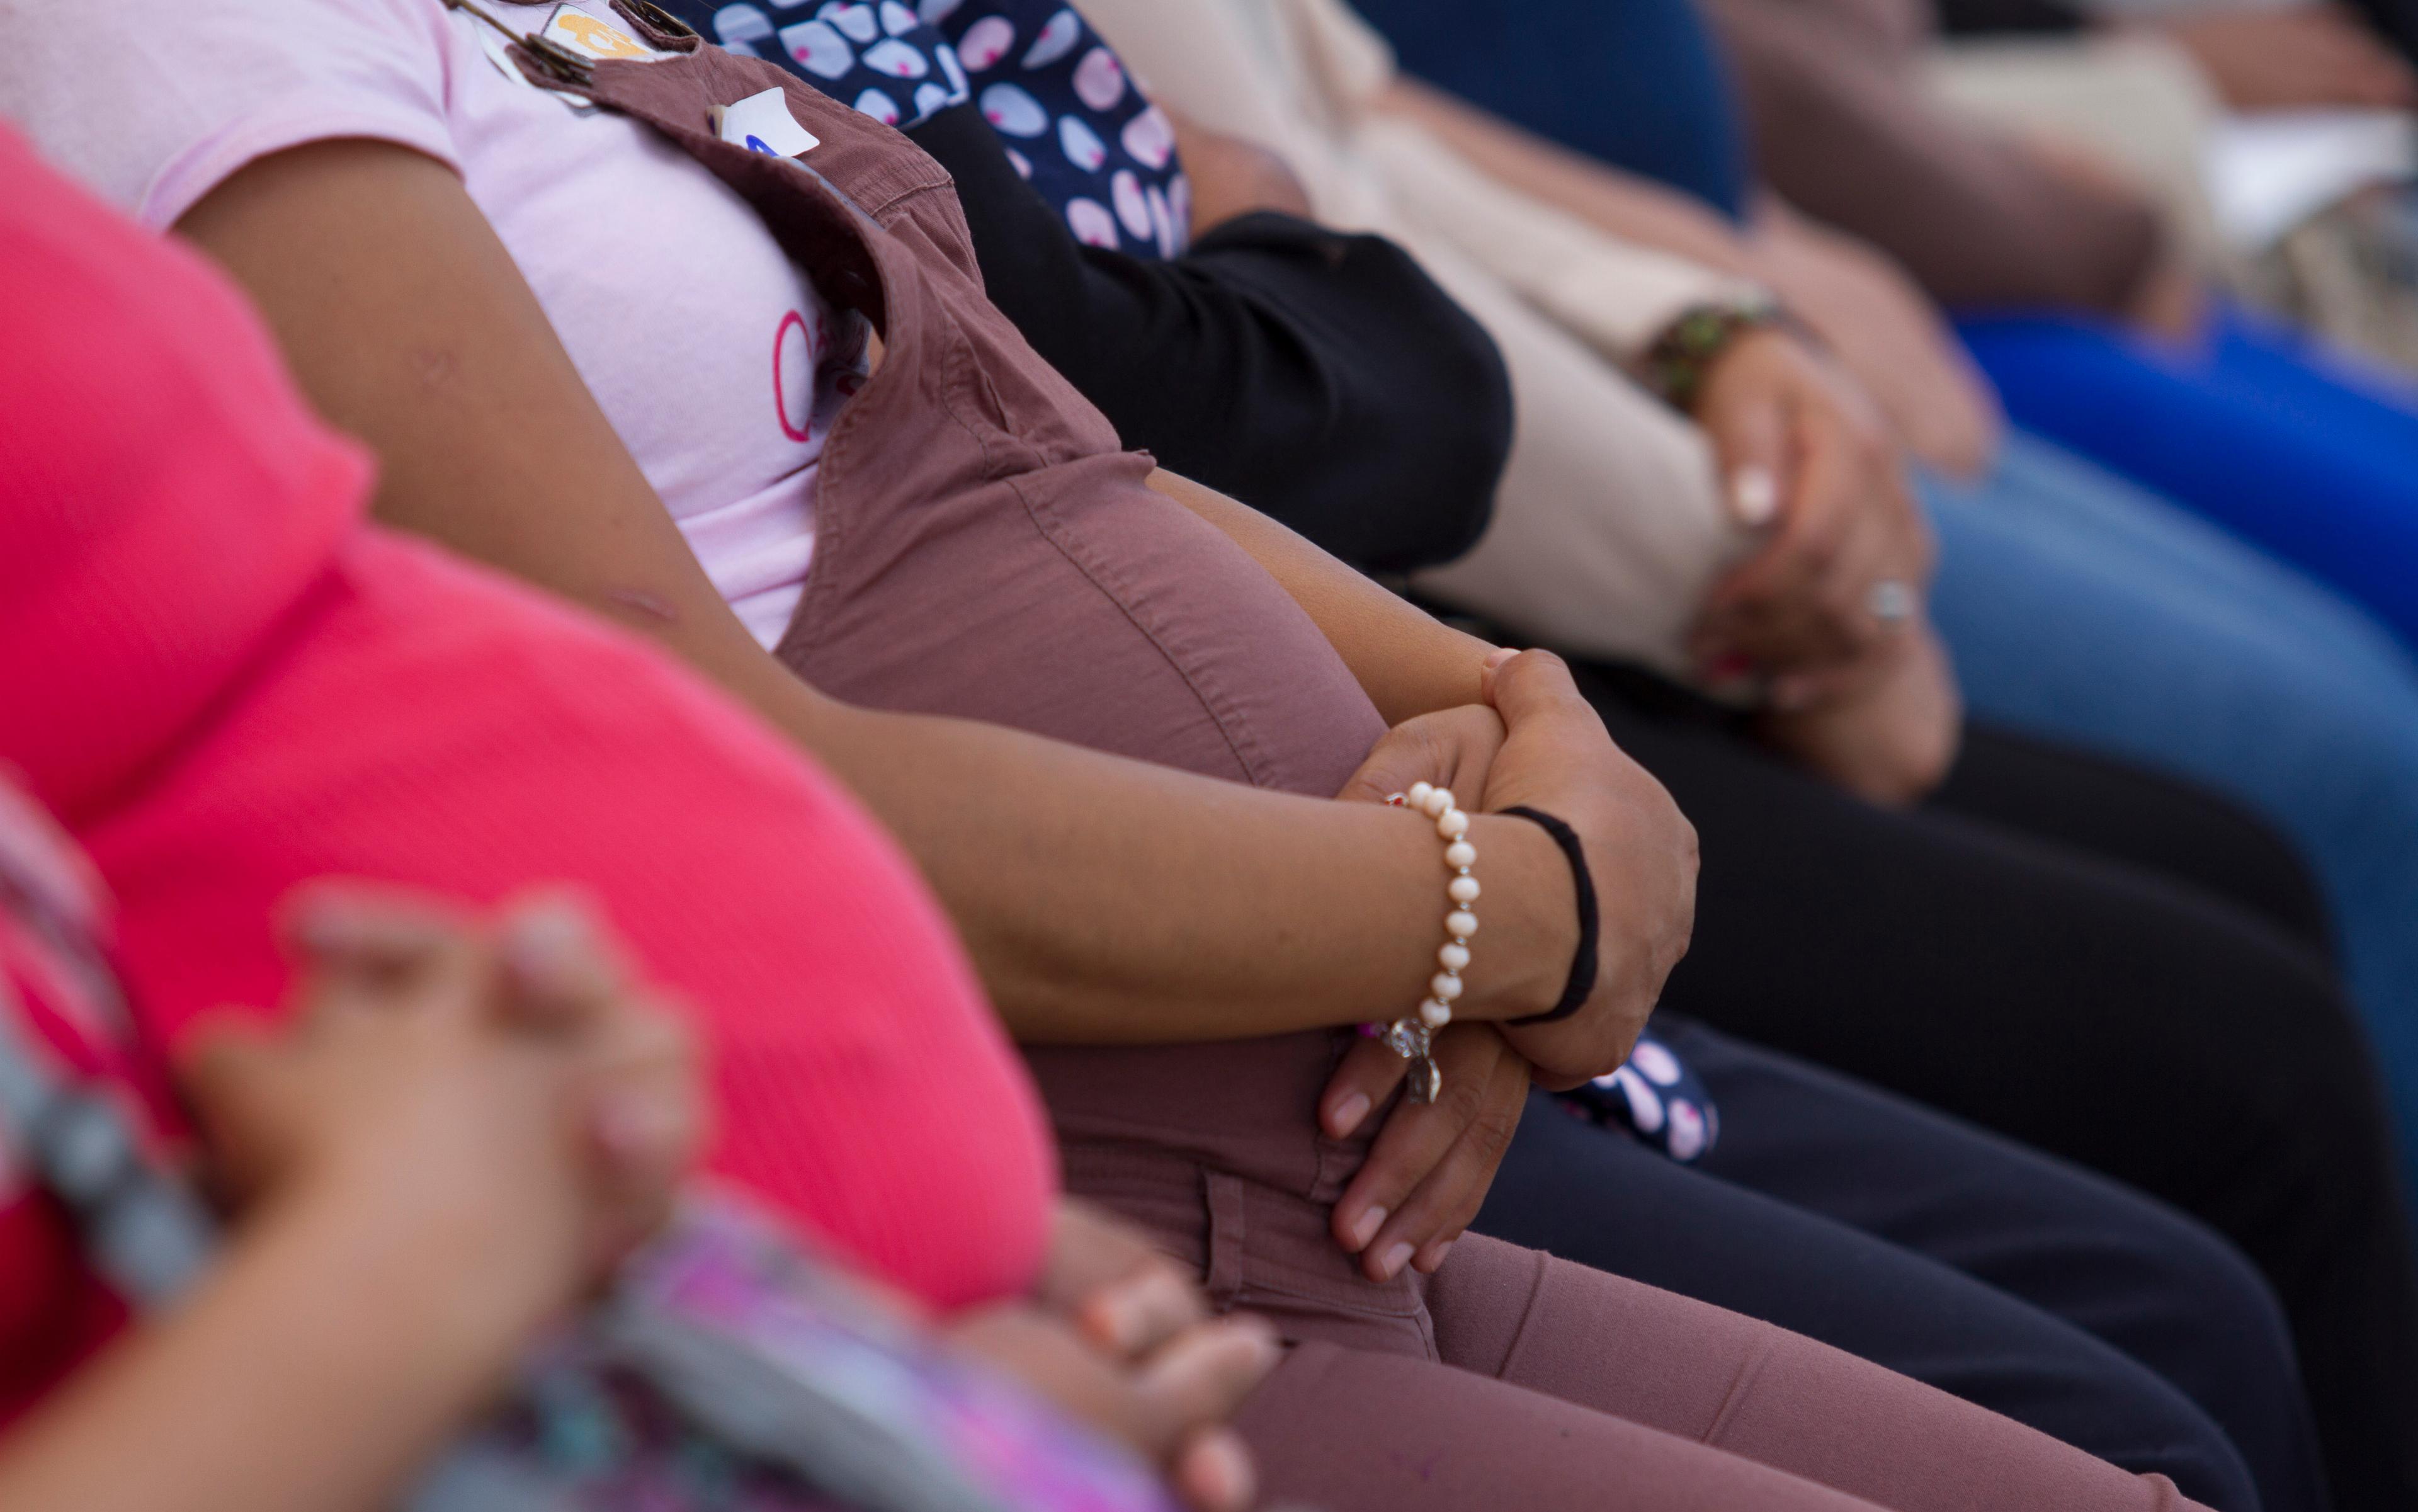 Desde engaños hasta amenazas de muerte: las historias de anticoncepción forzada en México